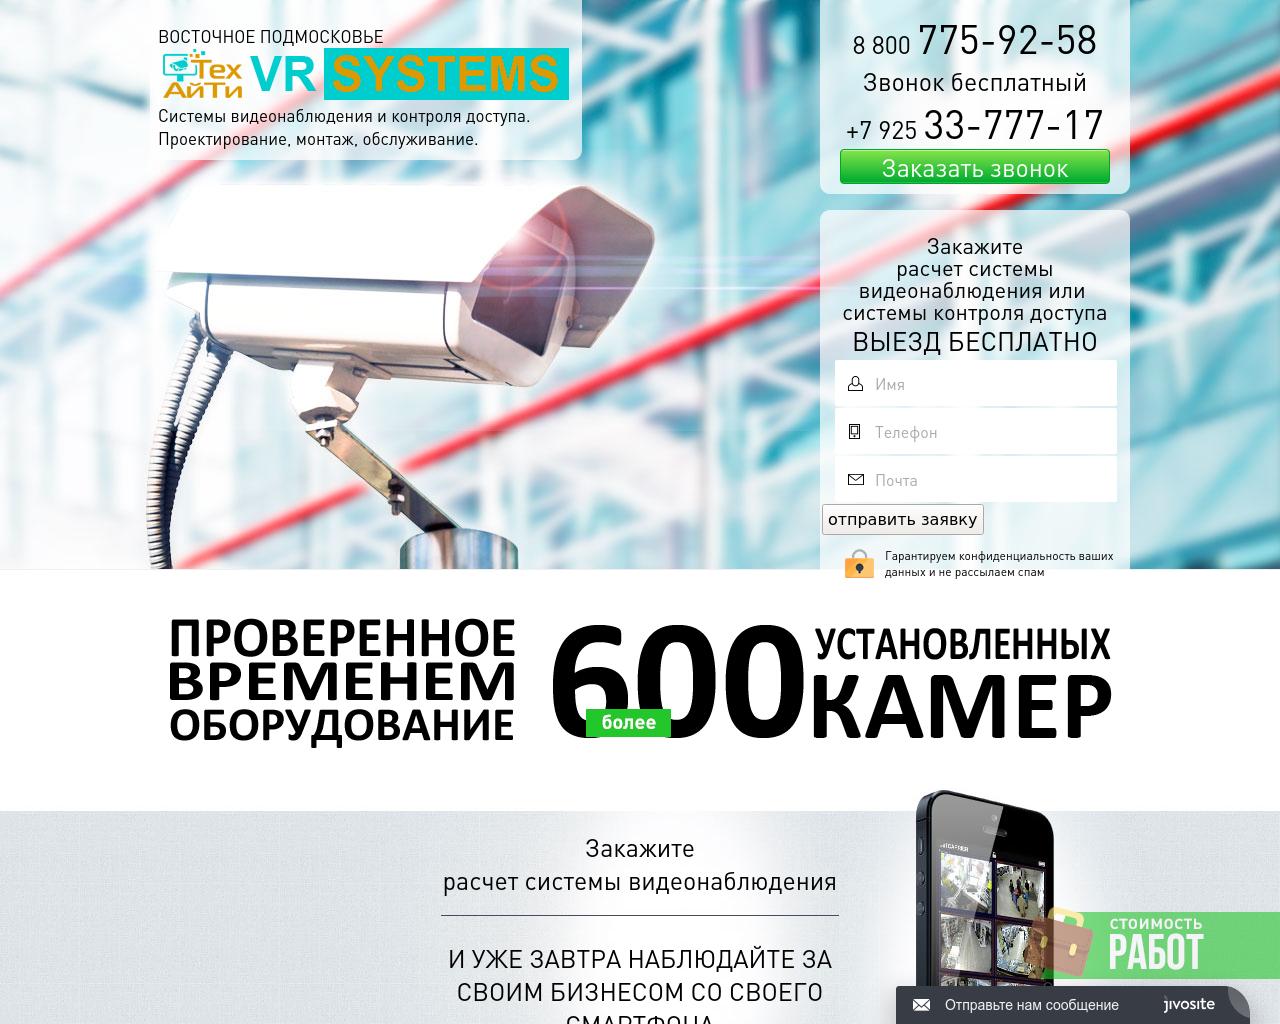 Изображение сайта vr-systems.ru в разрешении 1280x1024